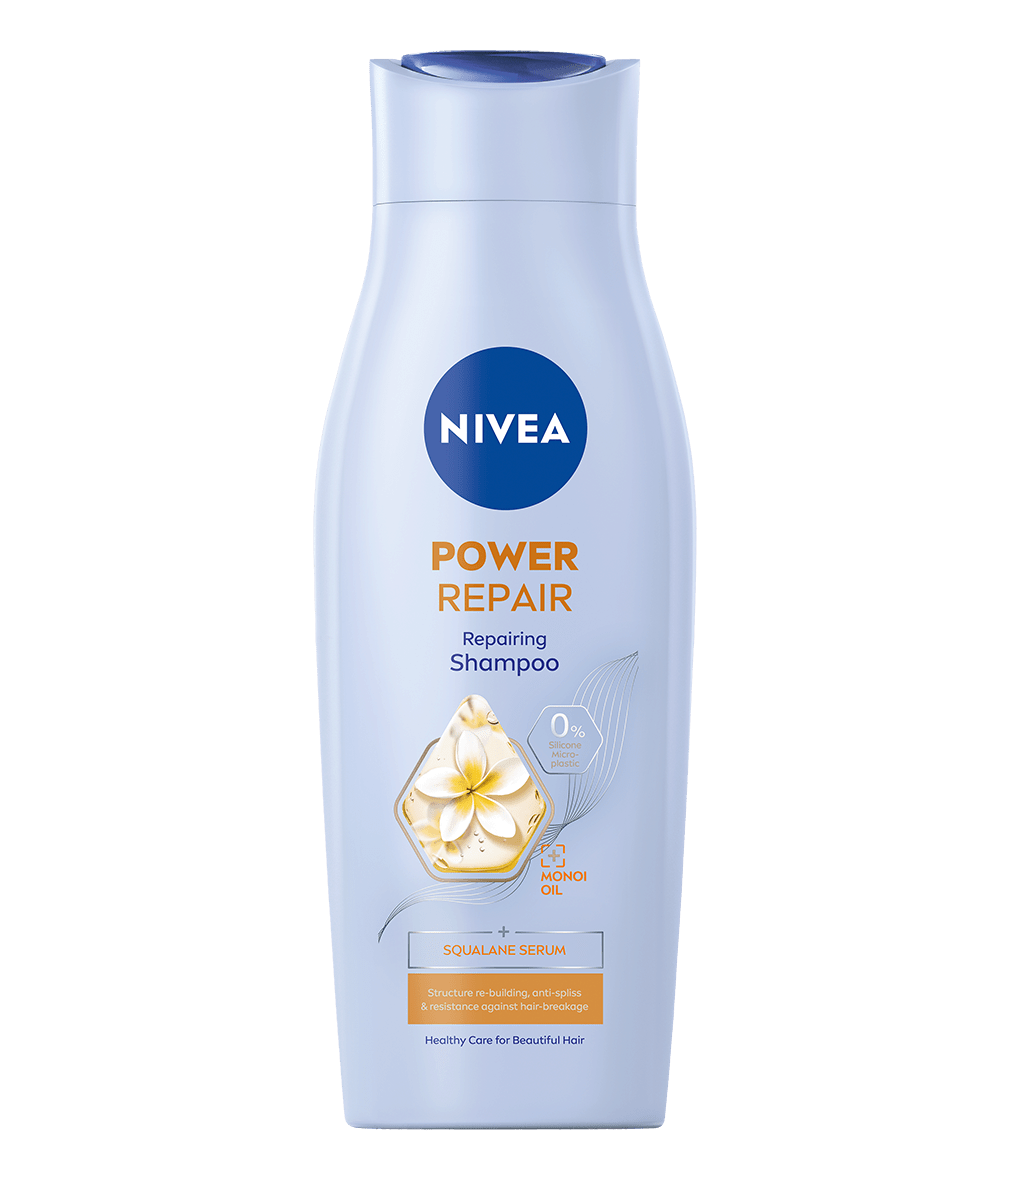 nivea szampon repair targeted